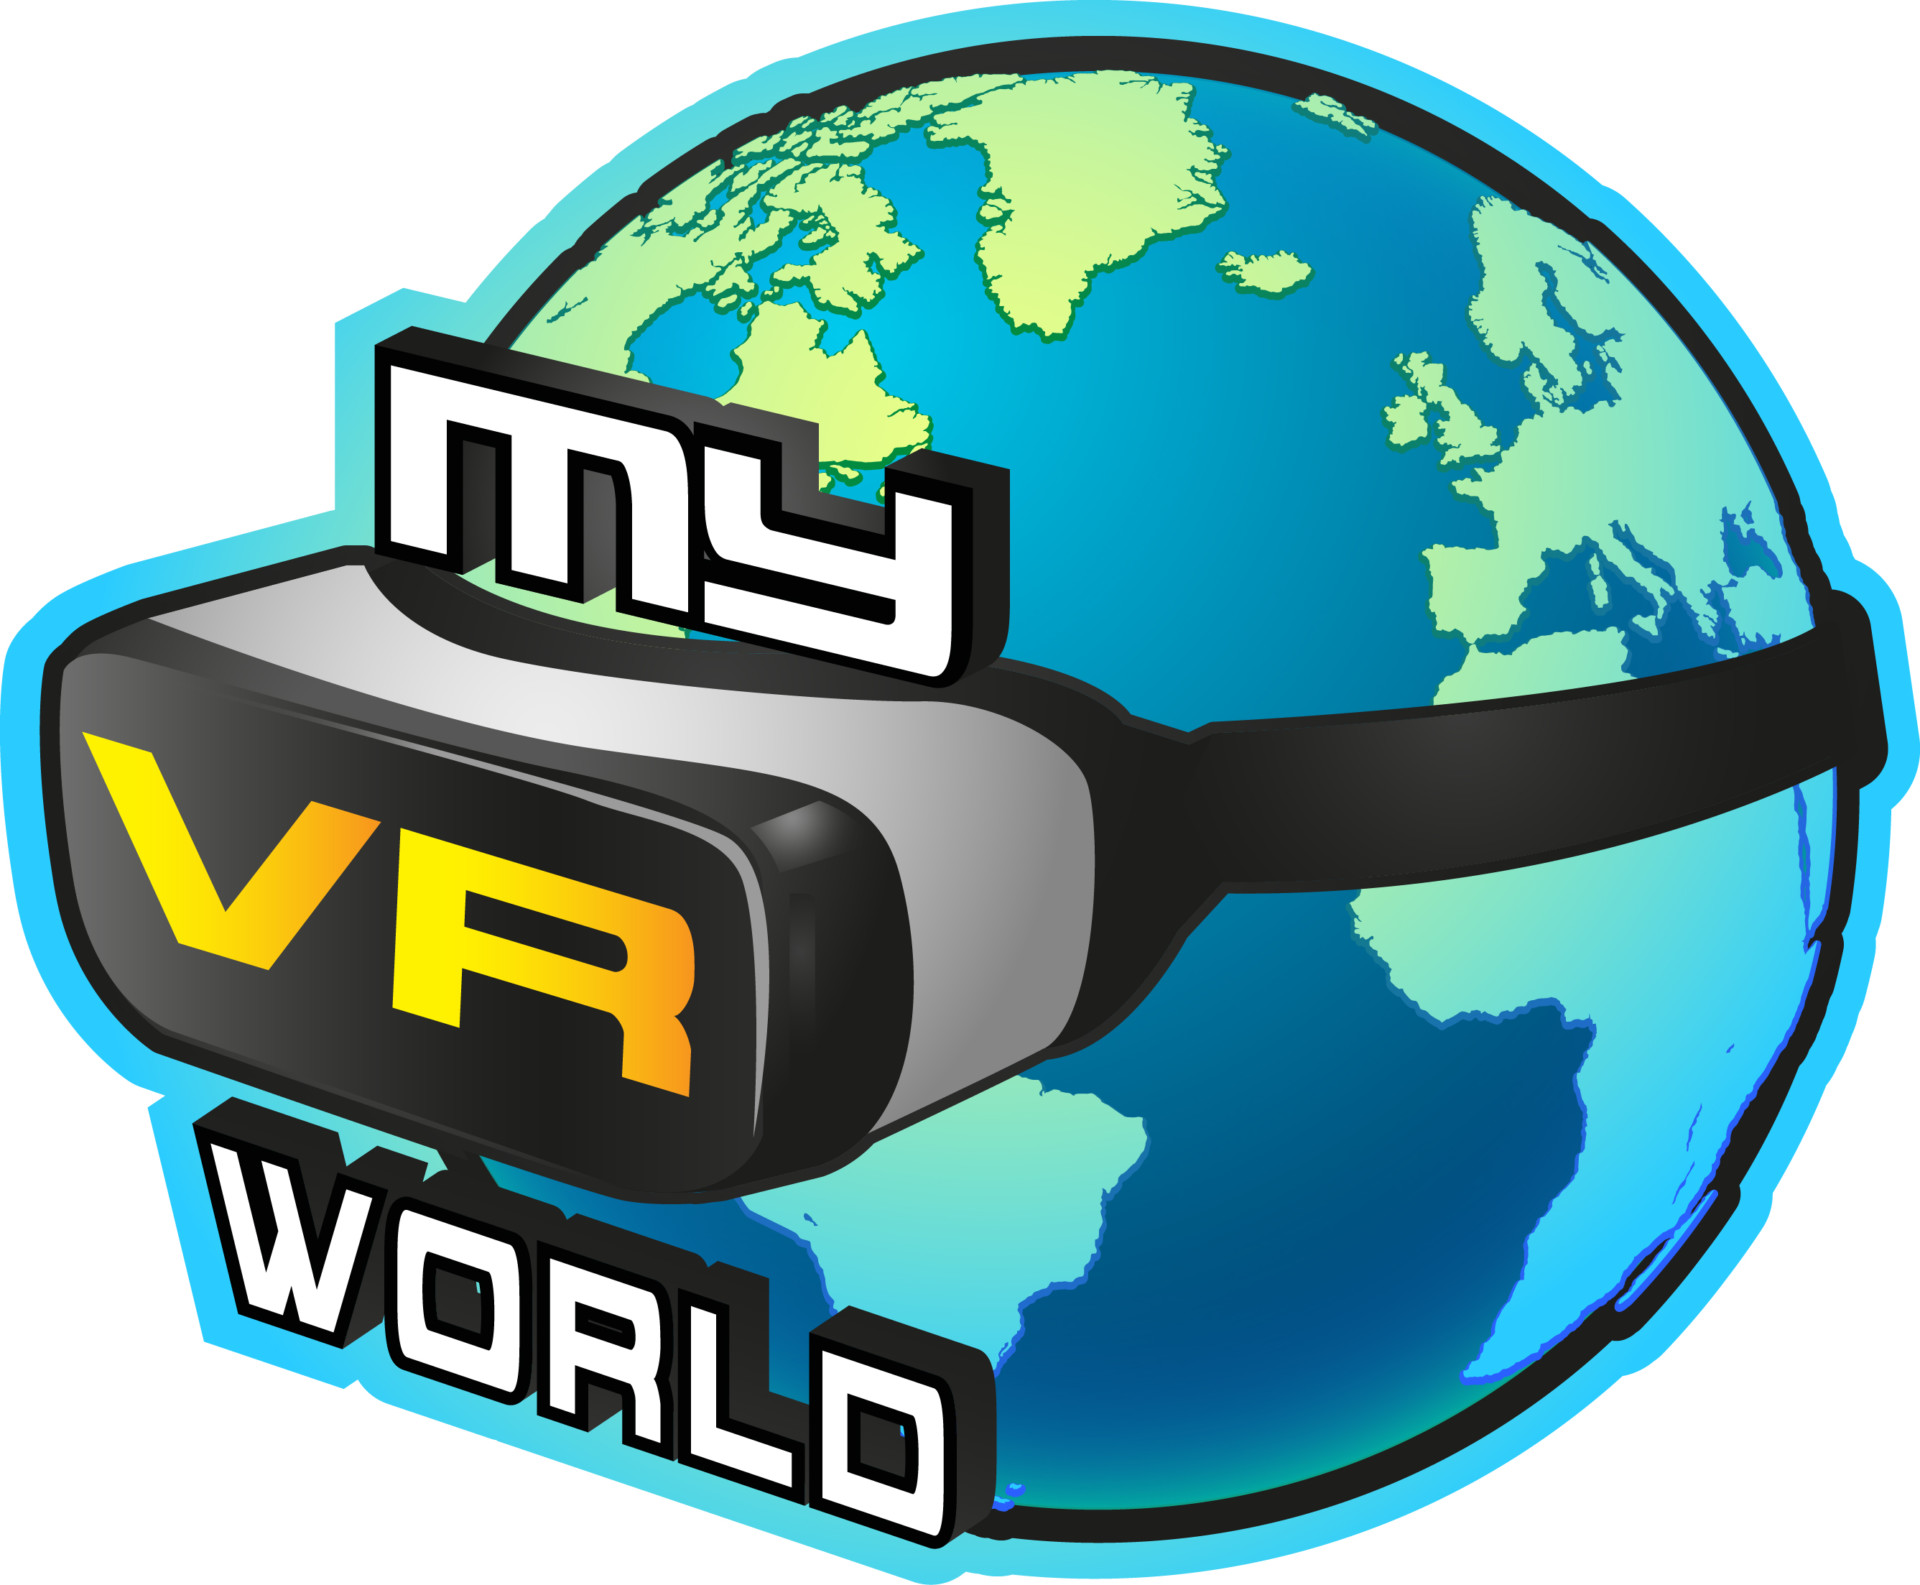 My-VR-World